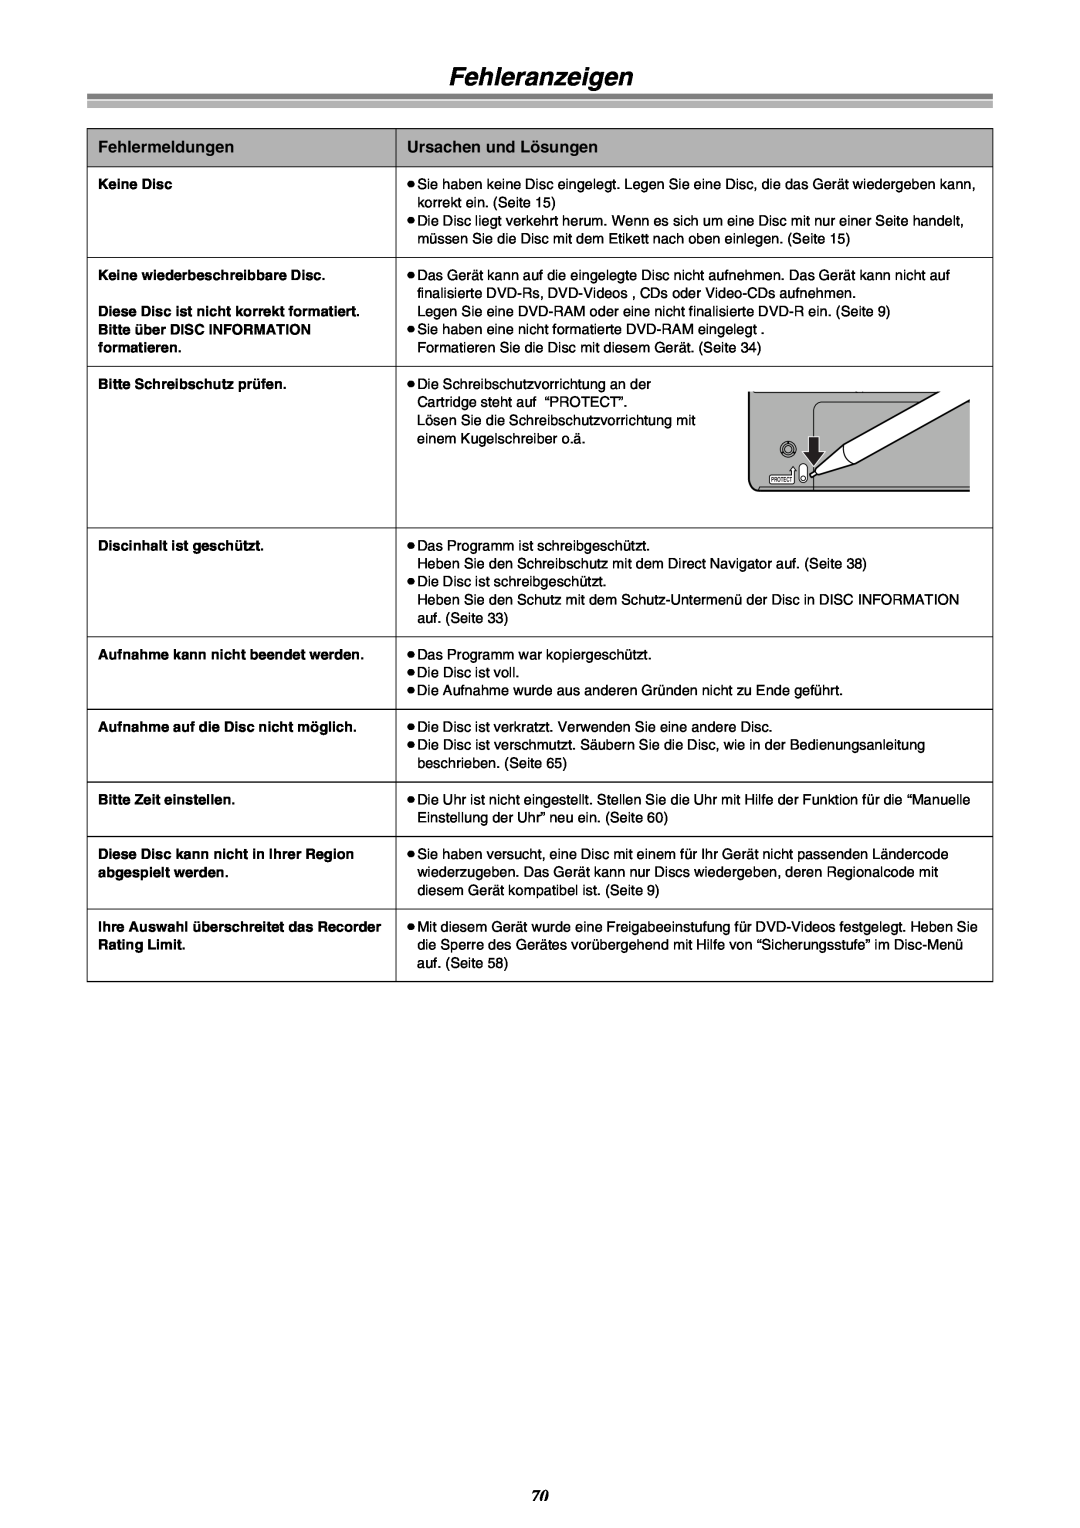 Panasonic DMR-E30 manual Fehleranzeigen, Fehlermeldungen, Ursachen und Lösungen 